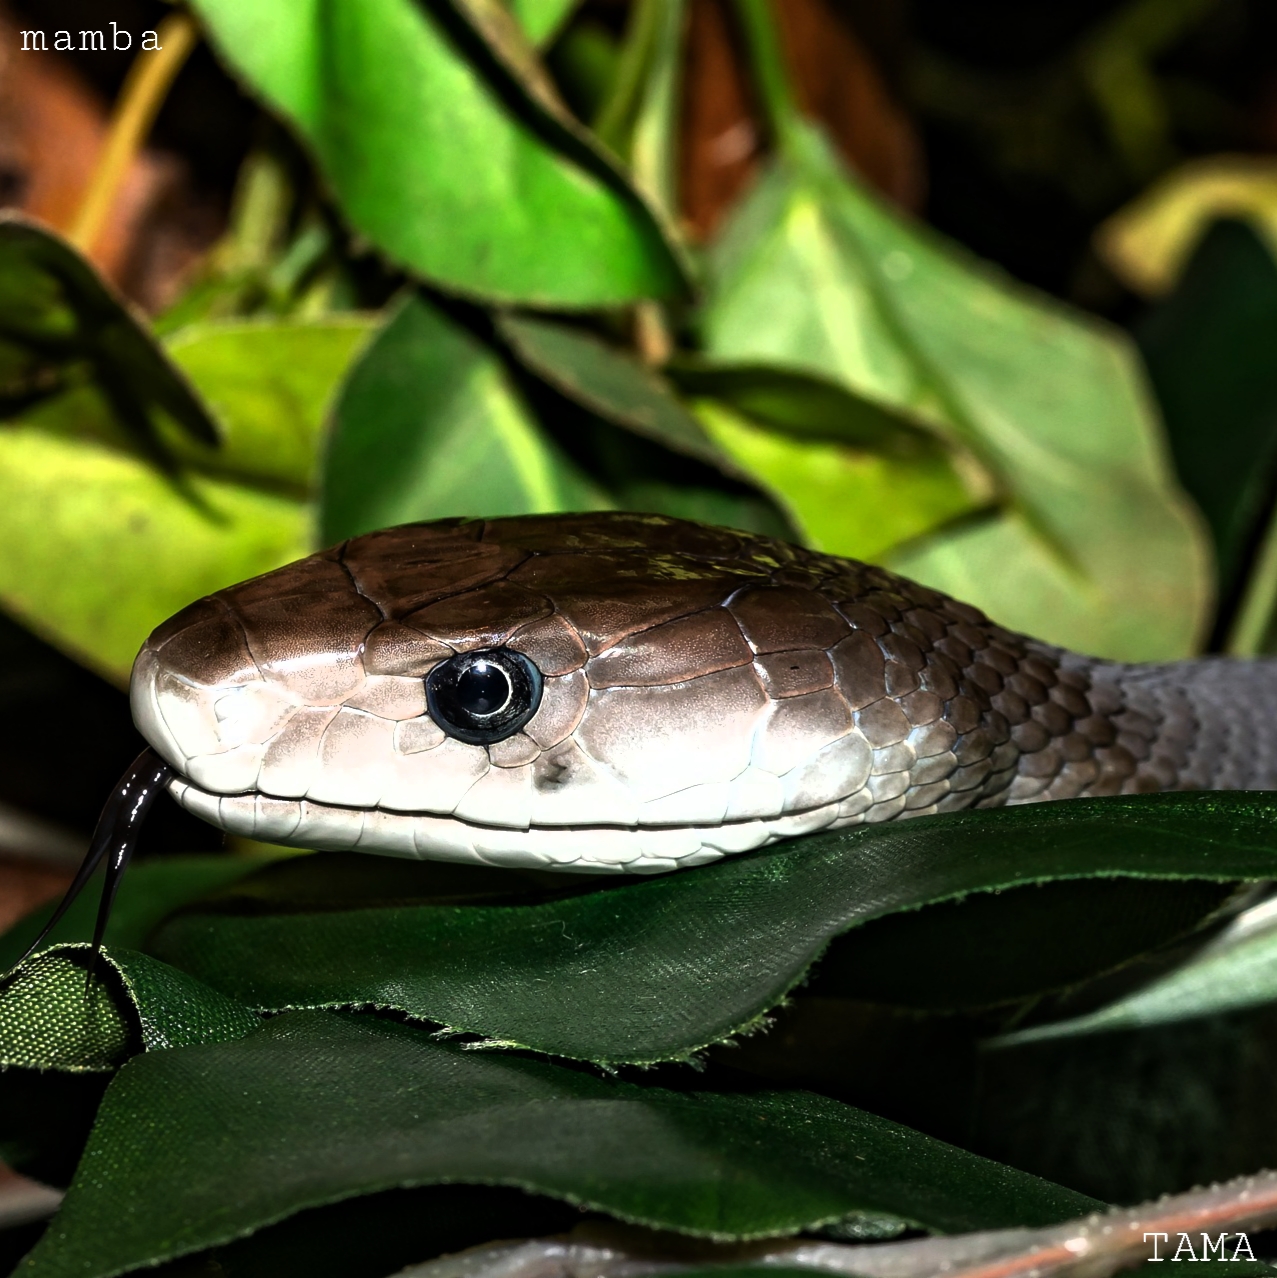 ブラックマンバの恐ろしい速さとは 世界最速の蛇 Tama Reports